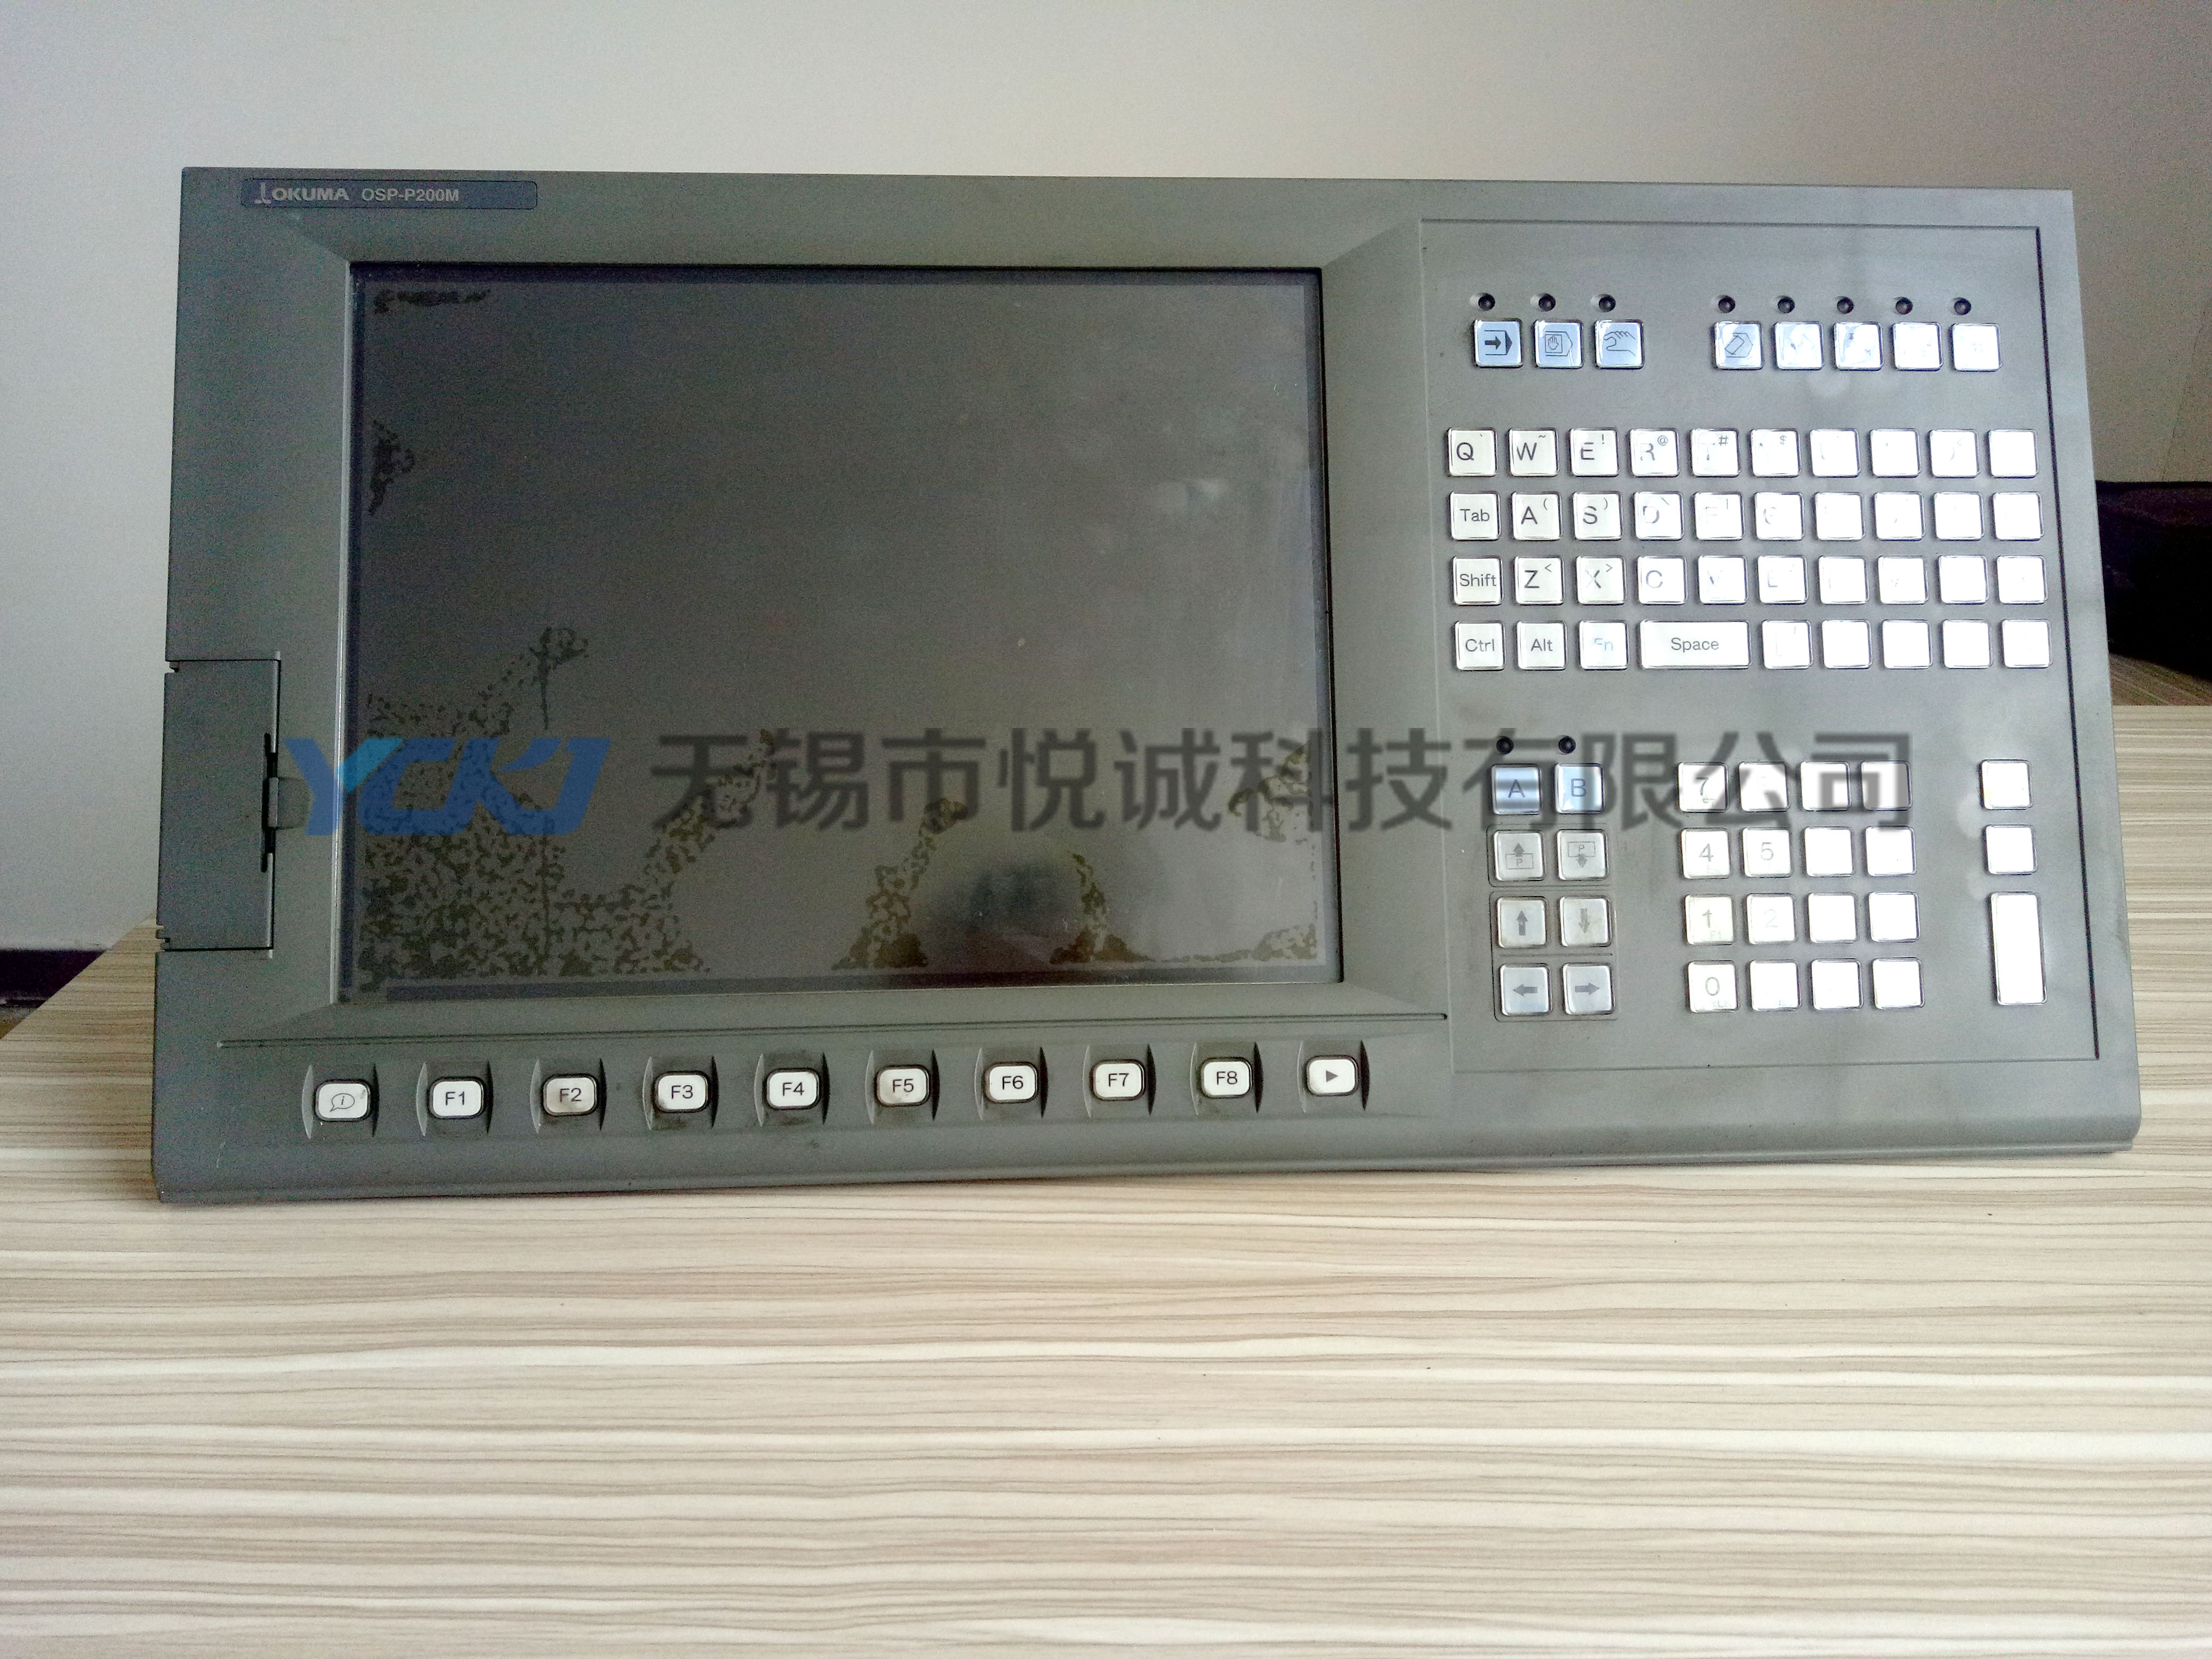 大隈OKUMA系统 OSP-P200M OSP-P200L 电路板维修及销售